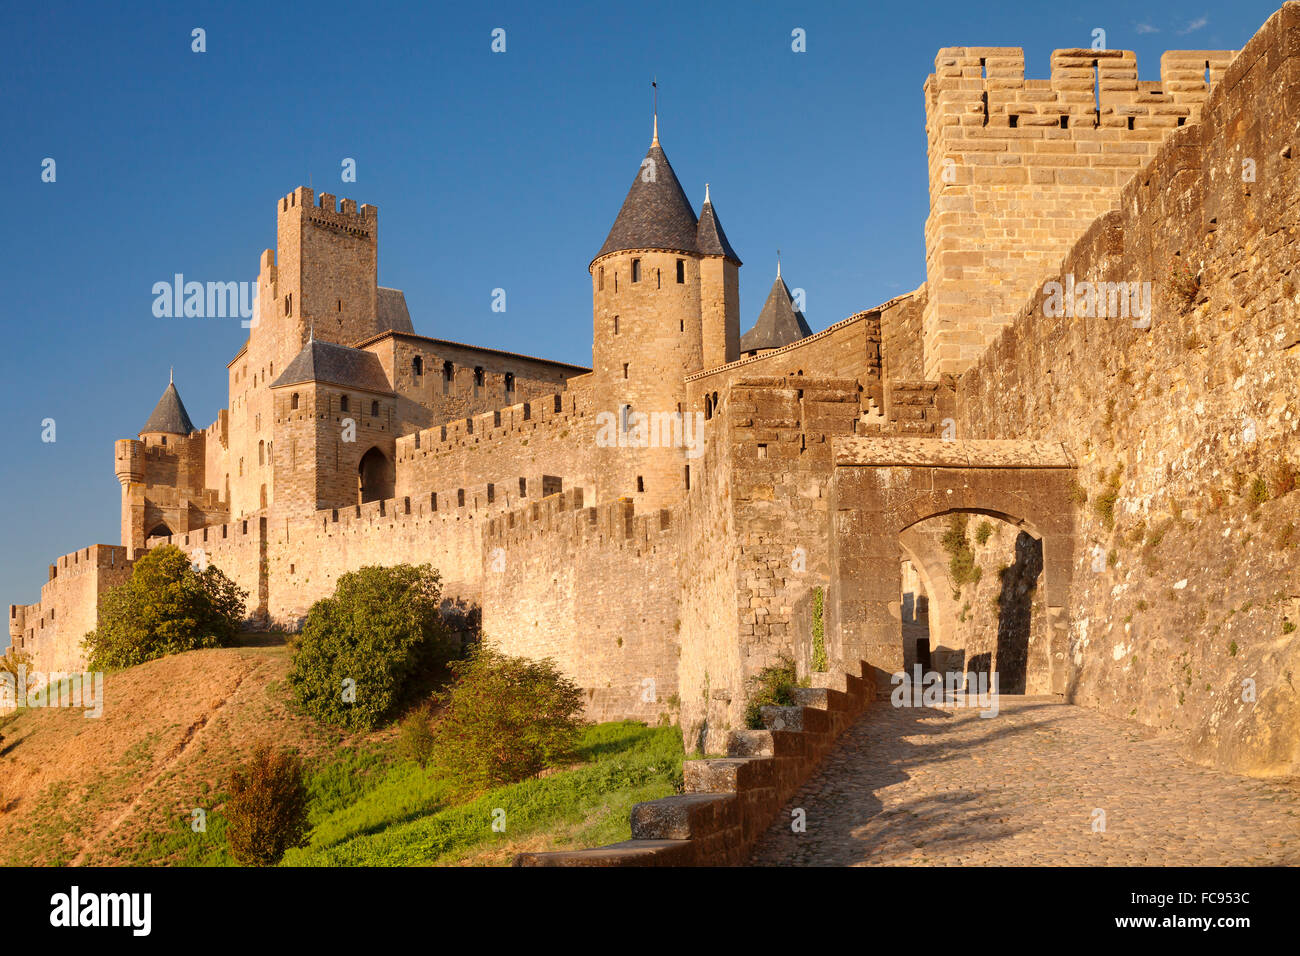 La Cite, mittelalterliche Festungsstadt Carcassonne, UNESCO-Weltkulturerbe, Languedoc-Roussillon, Frankreich, Europa Stockfoto